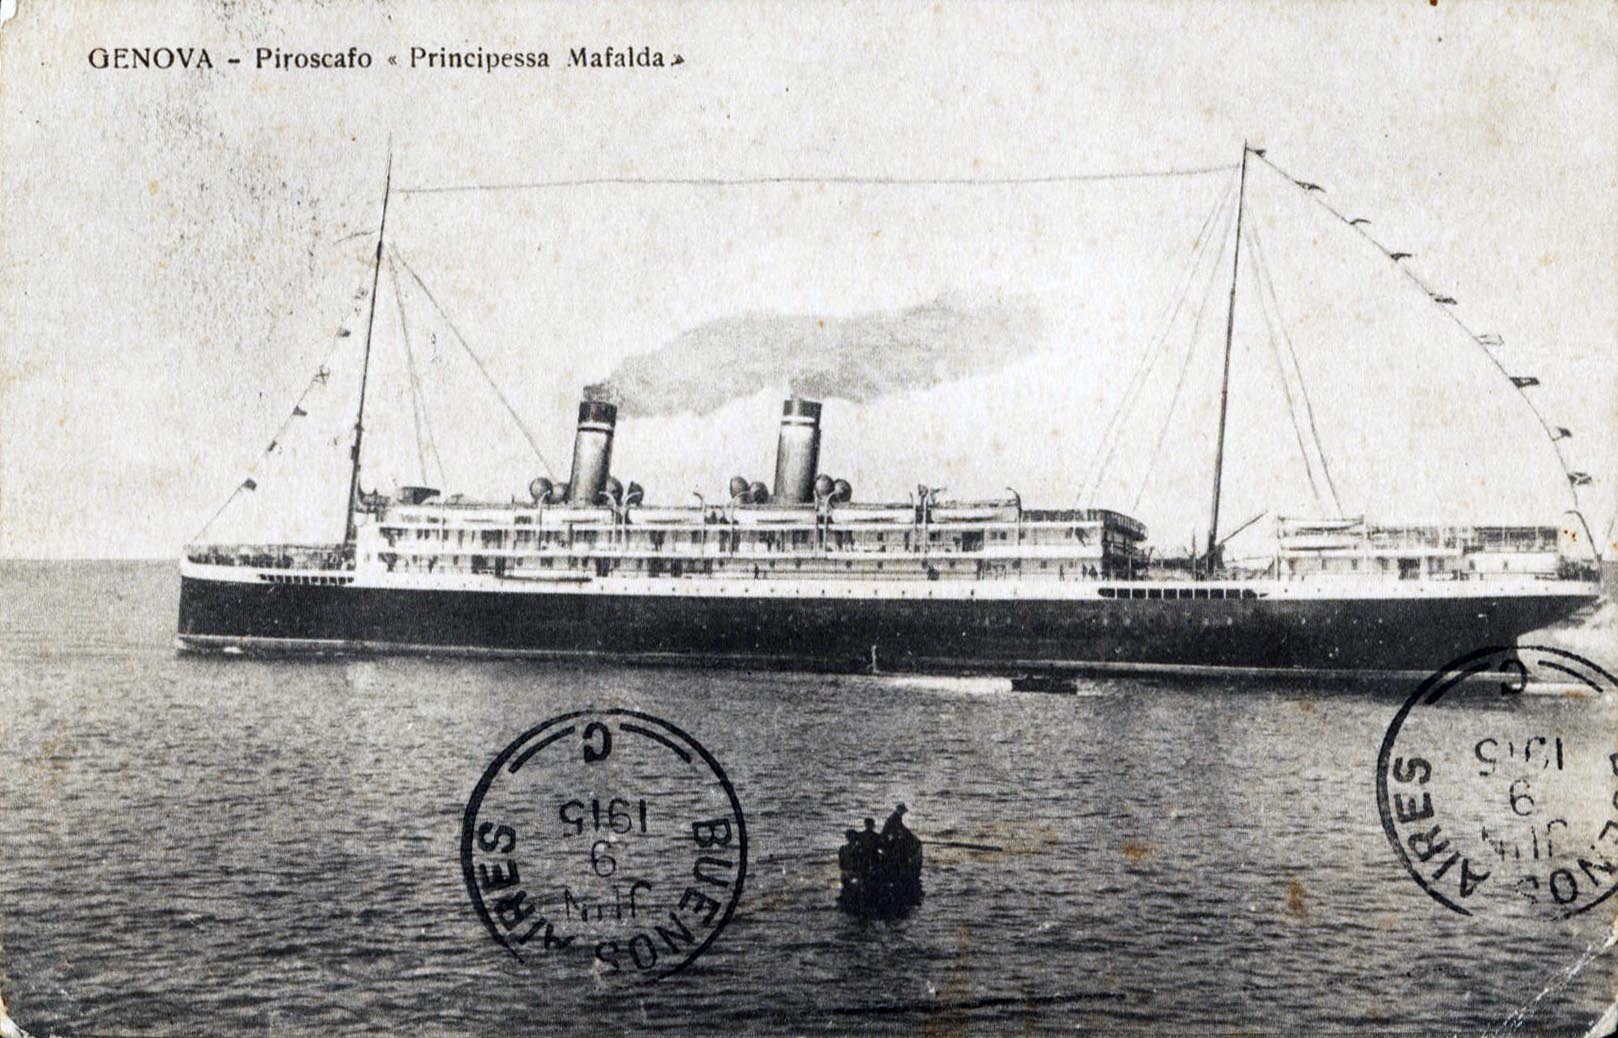 Principessa Mafalda, kebanggaan industri angkatan laut Italia, yang tenggelam pada 25 Oktober 1927 di lepas pantai Brasil (Argentine Navy Archive)